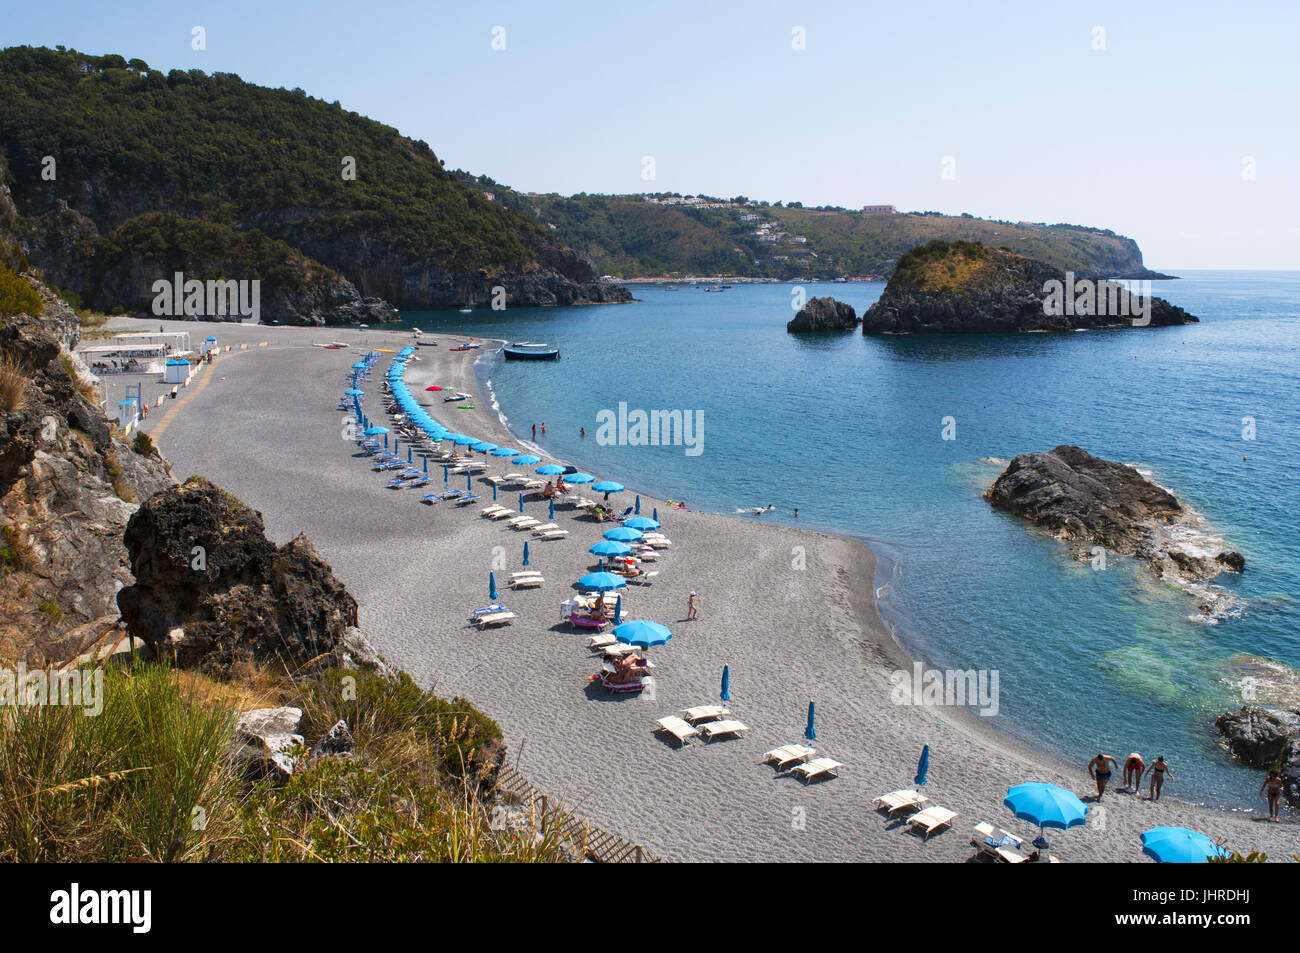 La playa negra de Scoglio dello Scorzone bahía escondida con piedras naturales realizado por las olas durante los siglos en Calabria, sur de Italia Foto de stock